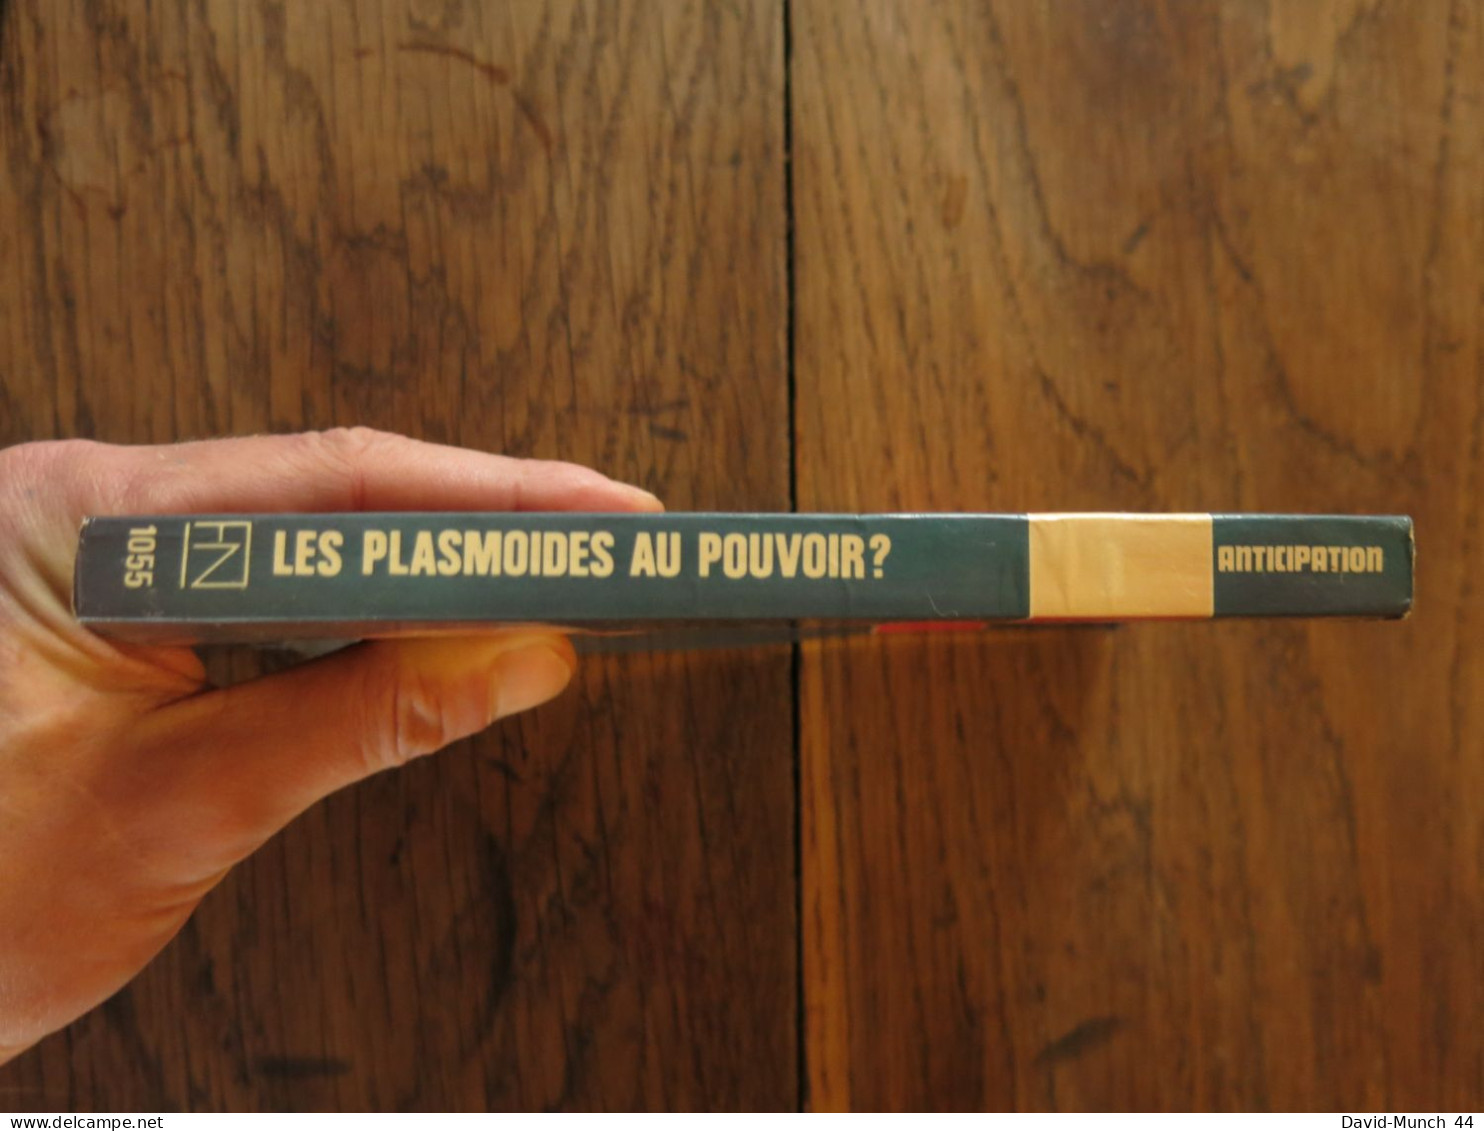 Les Psalmoides Au Pouvoir? De G. Morris. Editions Fleuve Noir, Collection "Anticipation". 1981 - Fleuve Noir